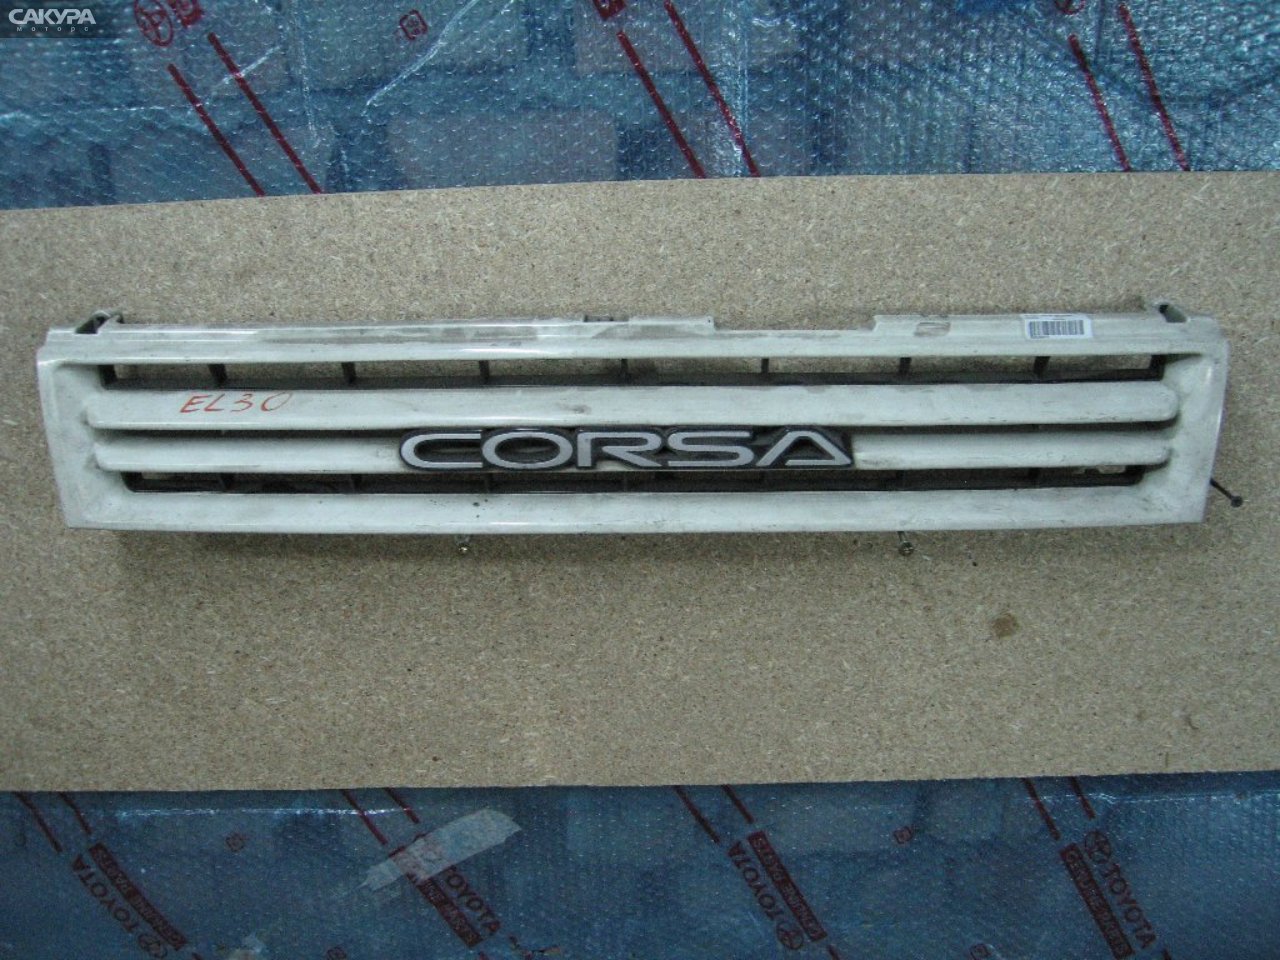 Решетка радиатора Toyota Corsa EL30: купить в Сакура Абакан.